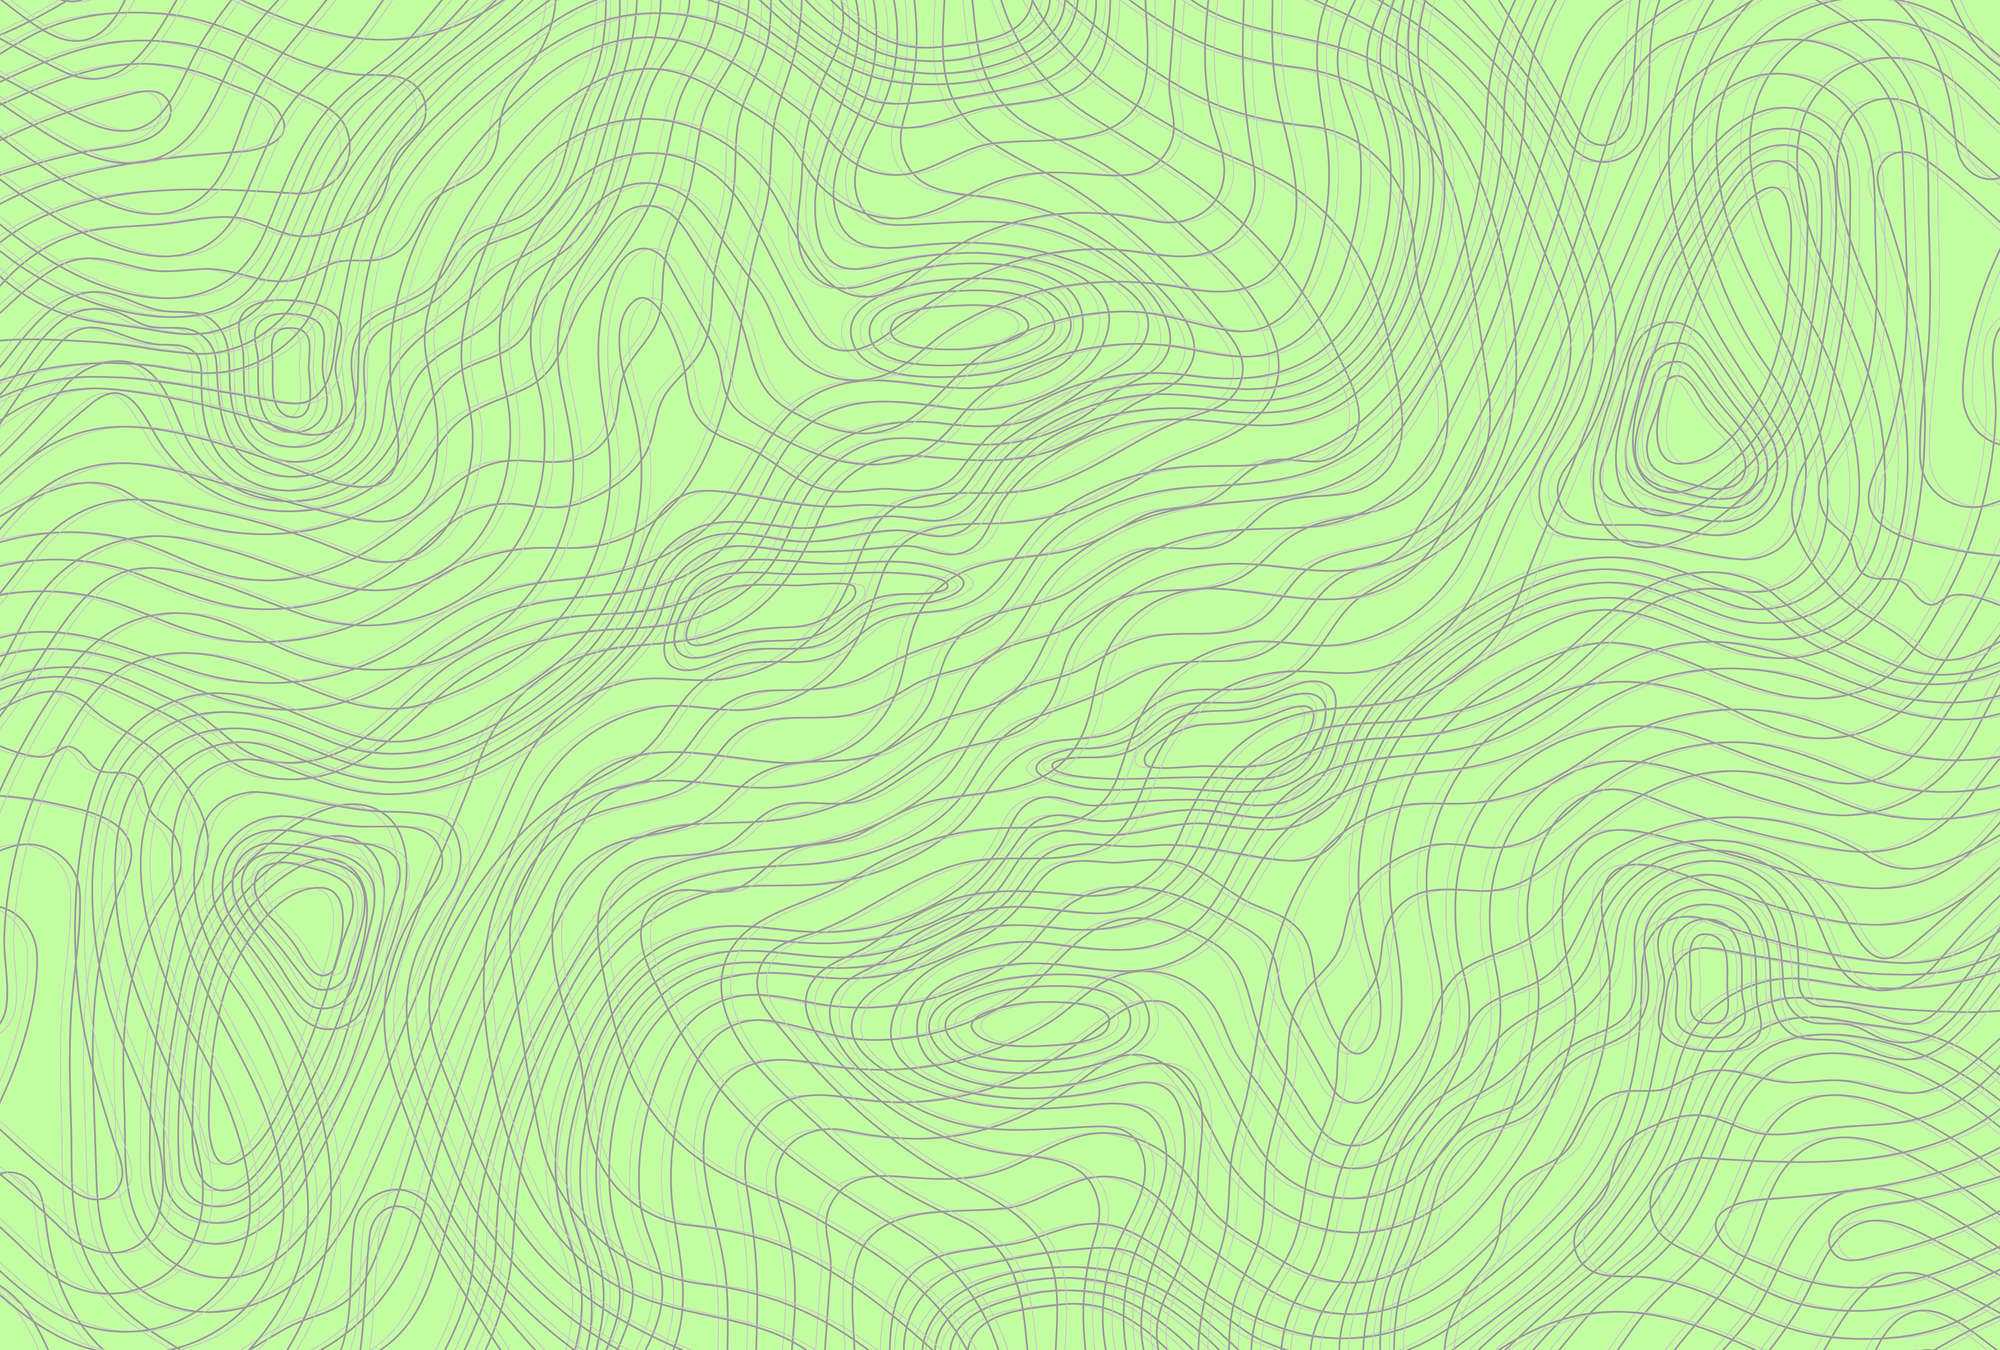             Grüne Fototapete mit Linien Design – Grün, Grau
        